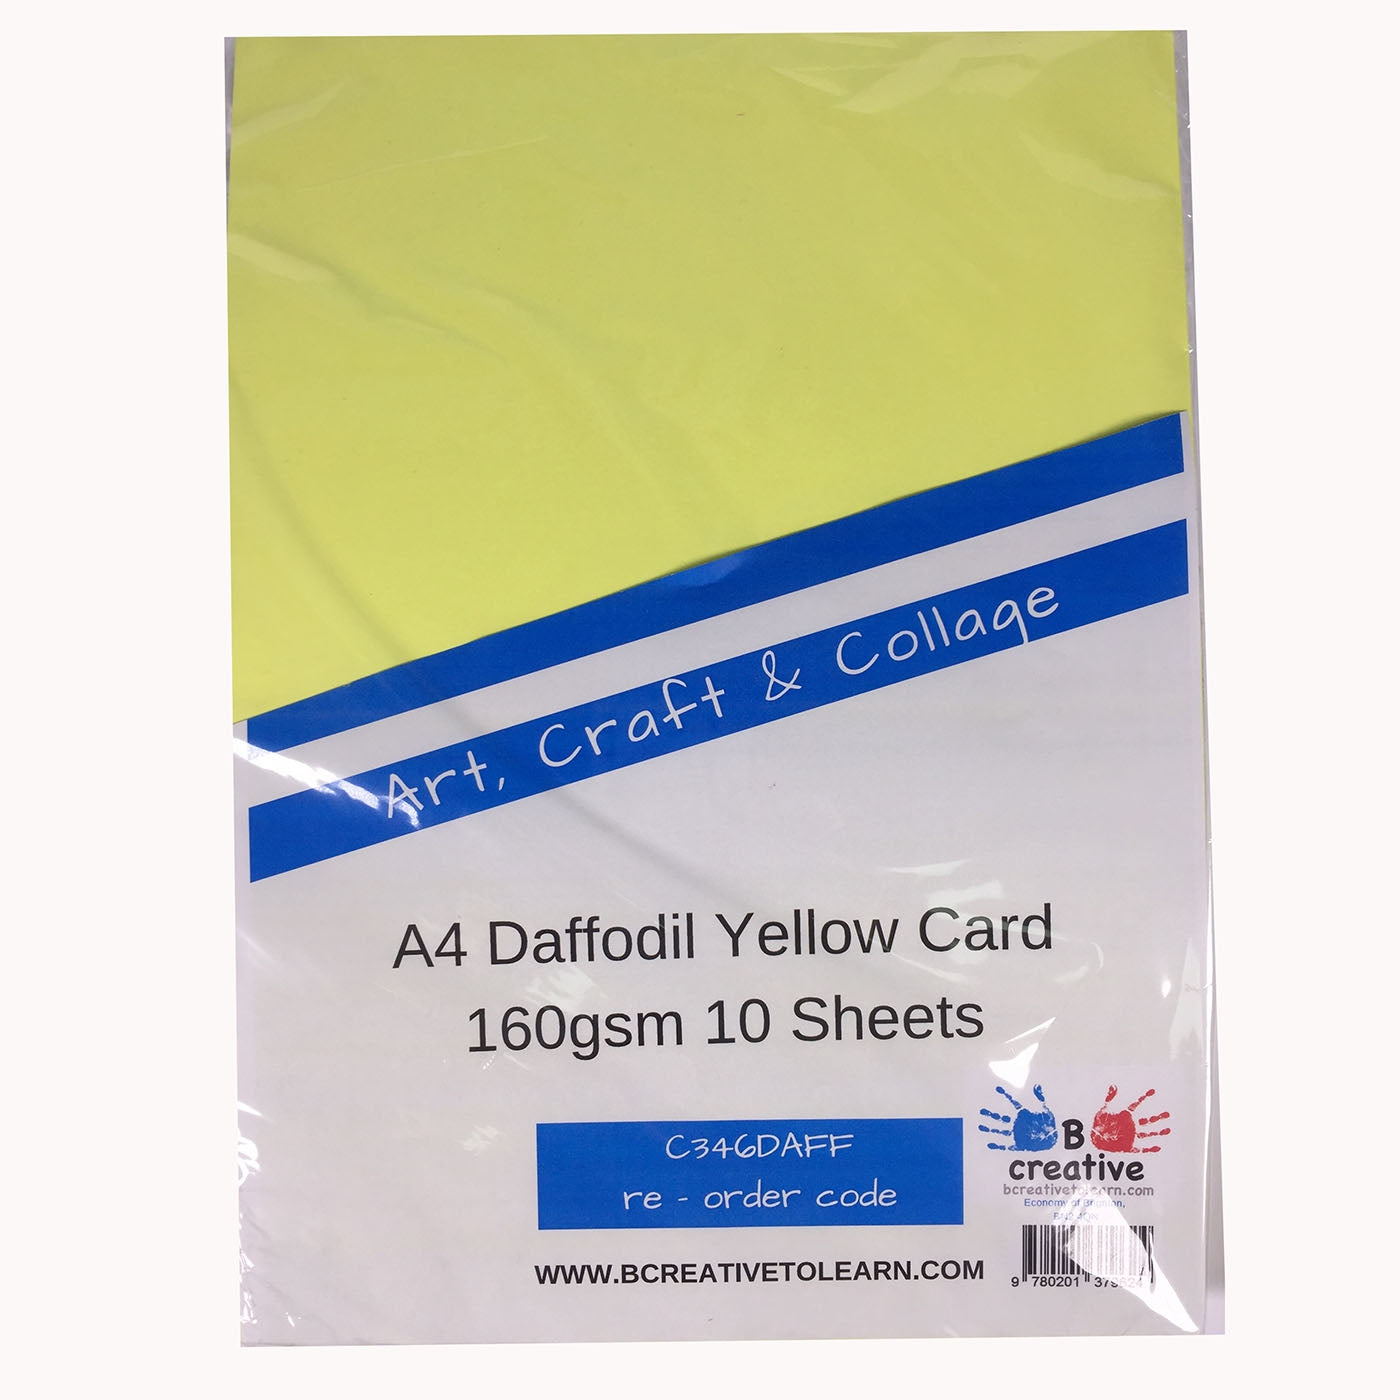 10 sheets yellow card